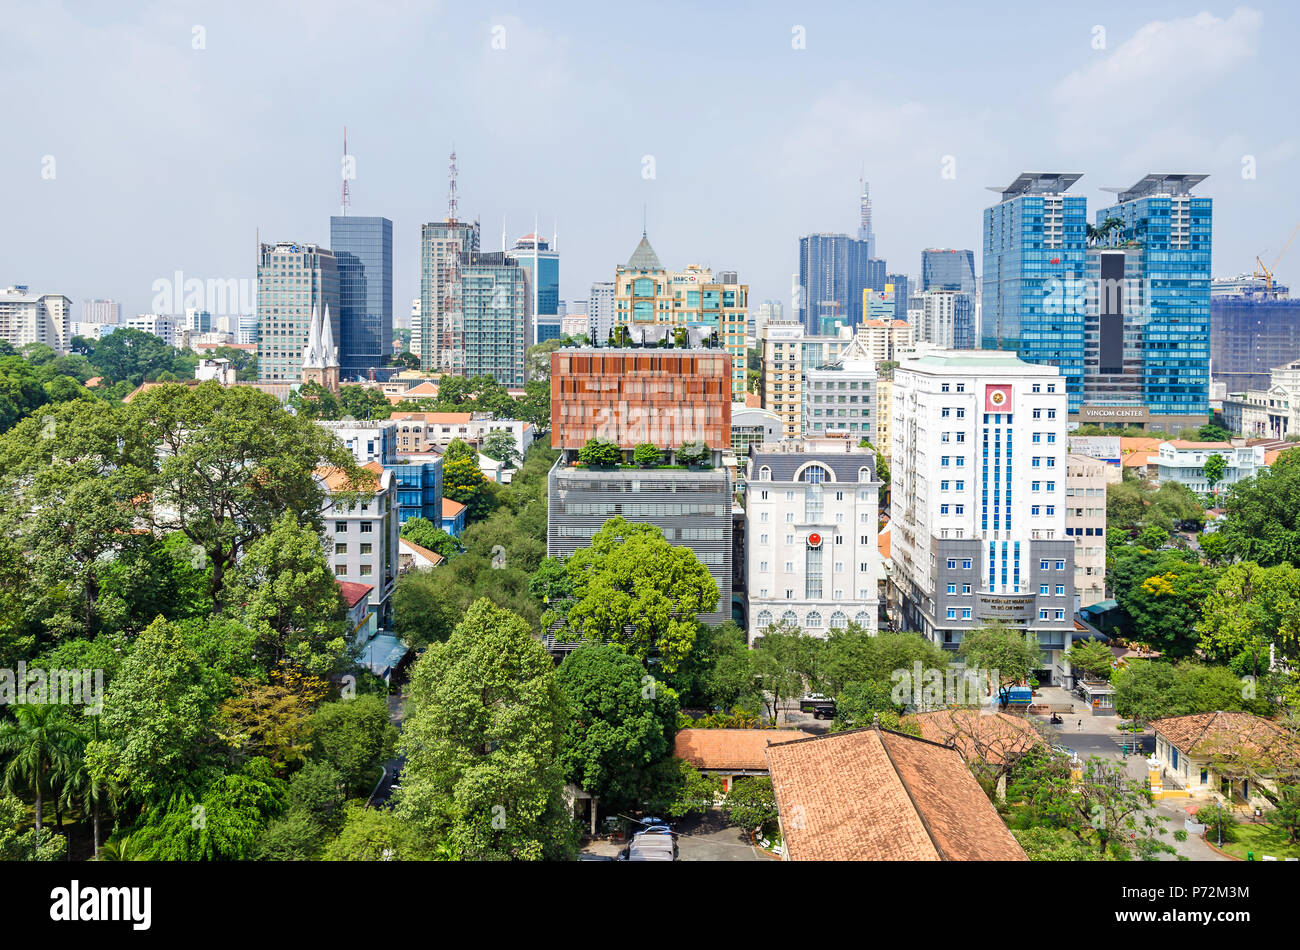 Ho Chi Minh City, Vietnam - Am 4. April, 2018: Ho Chi Minh City Metropole mit der Kathedrale Notre-Dame Basilika von Saigon, Saigon Trade Center auf der linken Seite ein Stockfoto